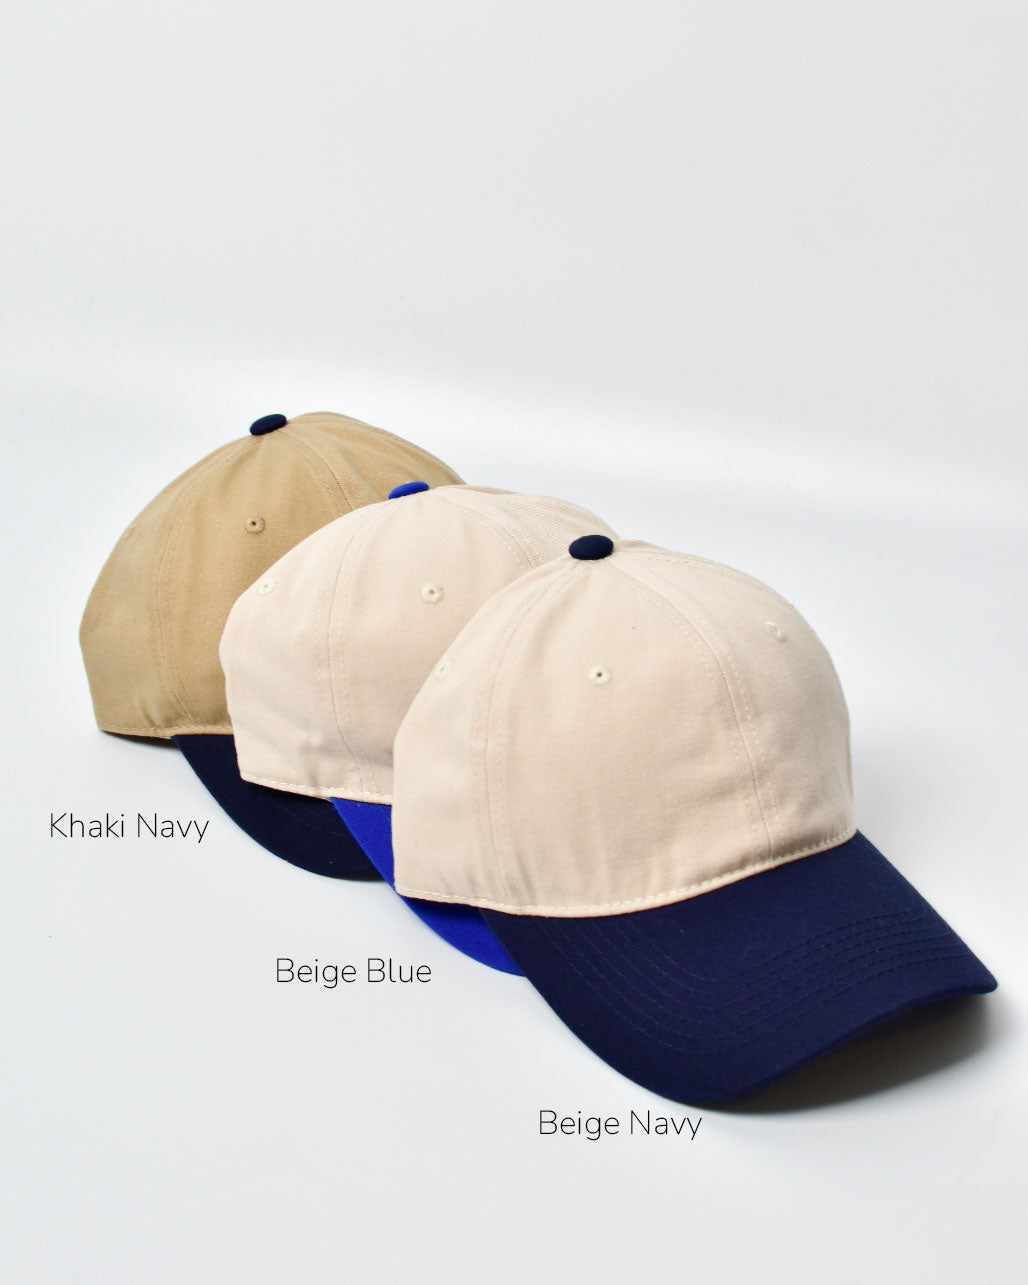 SIGNATURE / Duo-toned Beige Blue Cap